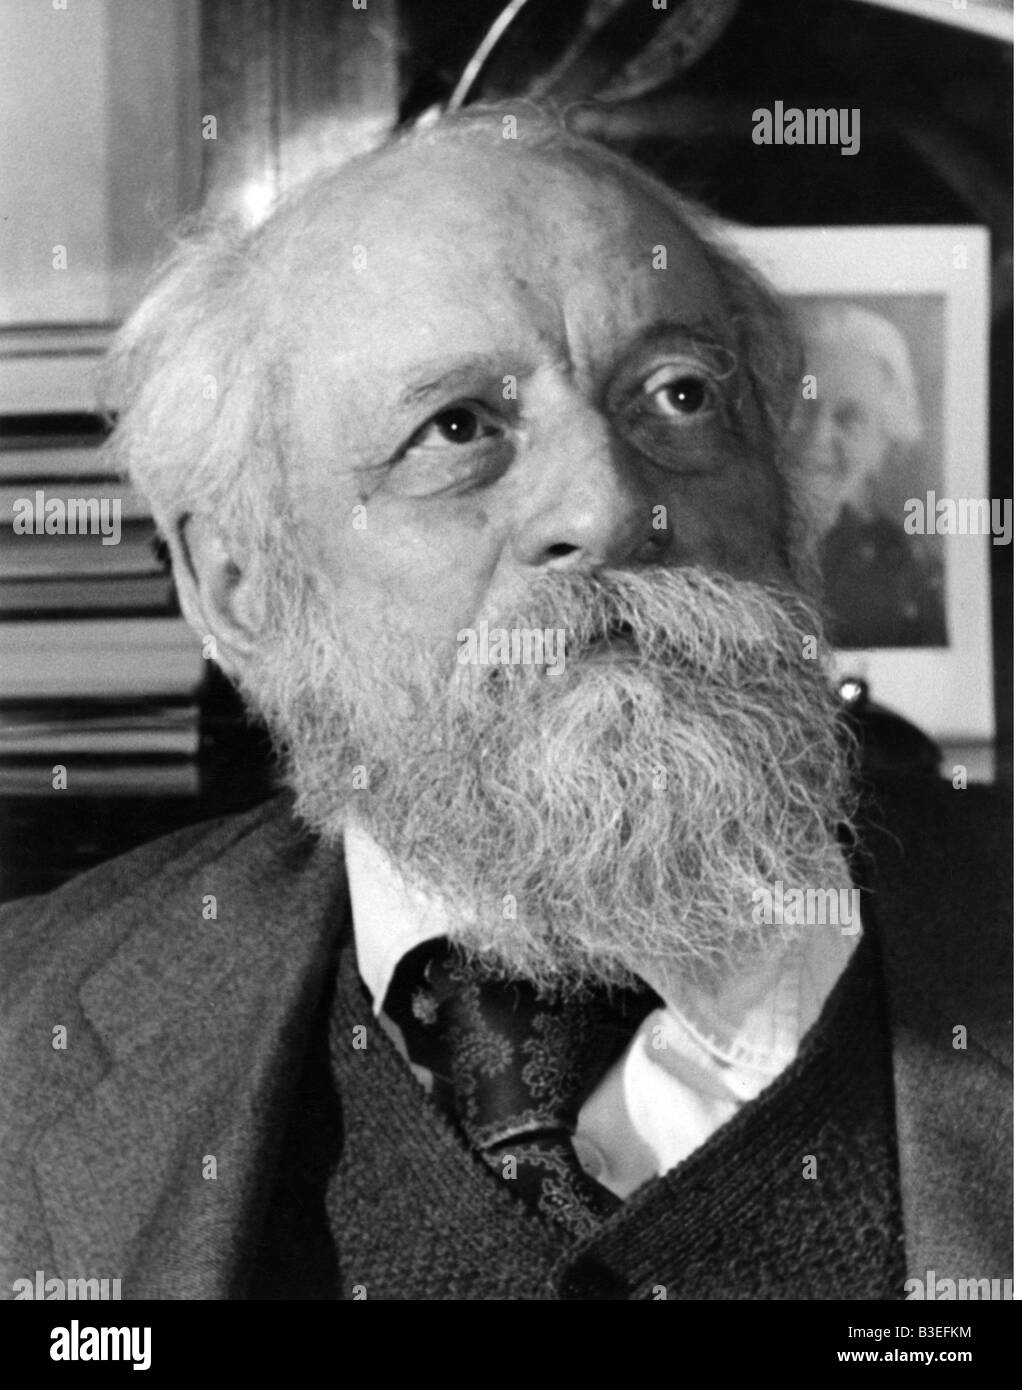 Buber, Martin, 8.2.1878 - 13.6.1965, inquateur et philosophe de religion juive autrichienne, mi-longueur, Banque D'Images